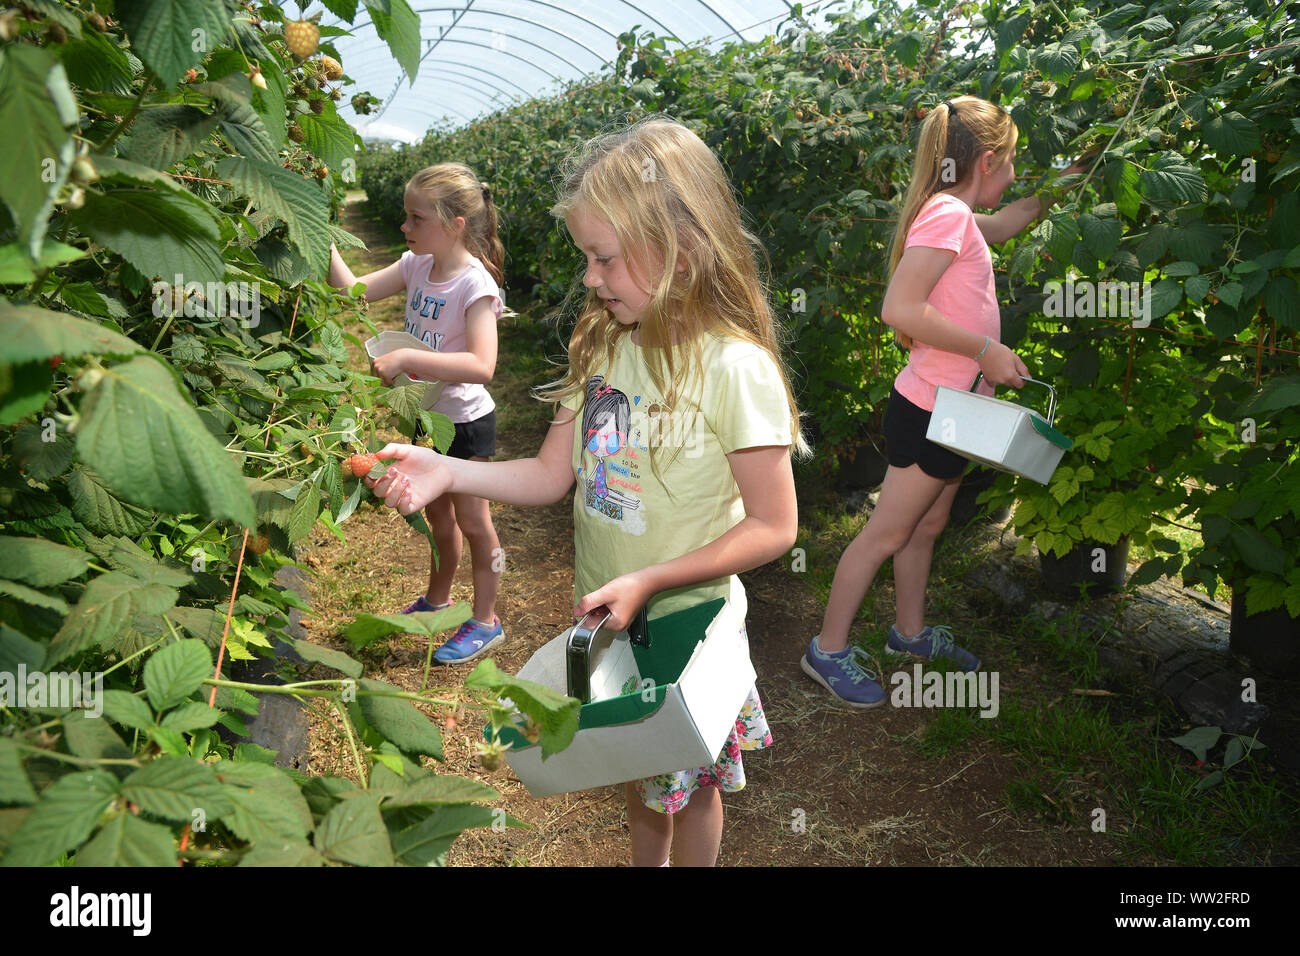 Le giovani ragazze pick di lamponi e altri frutti durante una visita ad una fattoria di frutta nei pressi di Edimburgo, Scozia Foto Stock